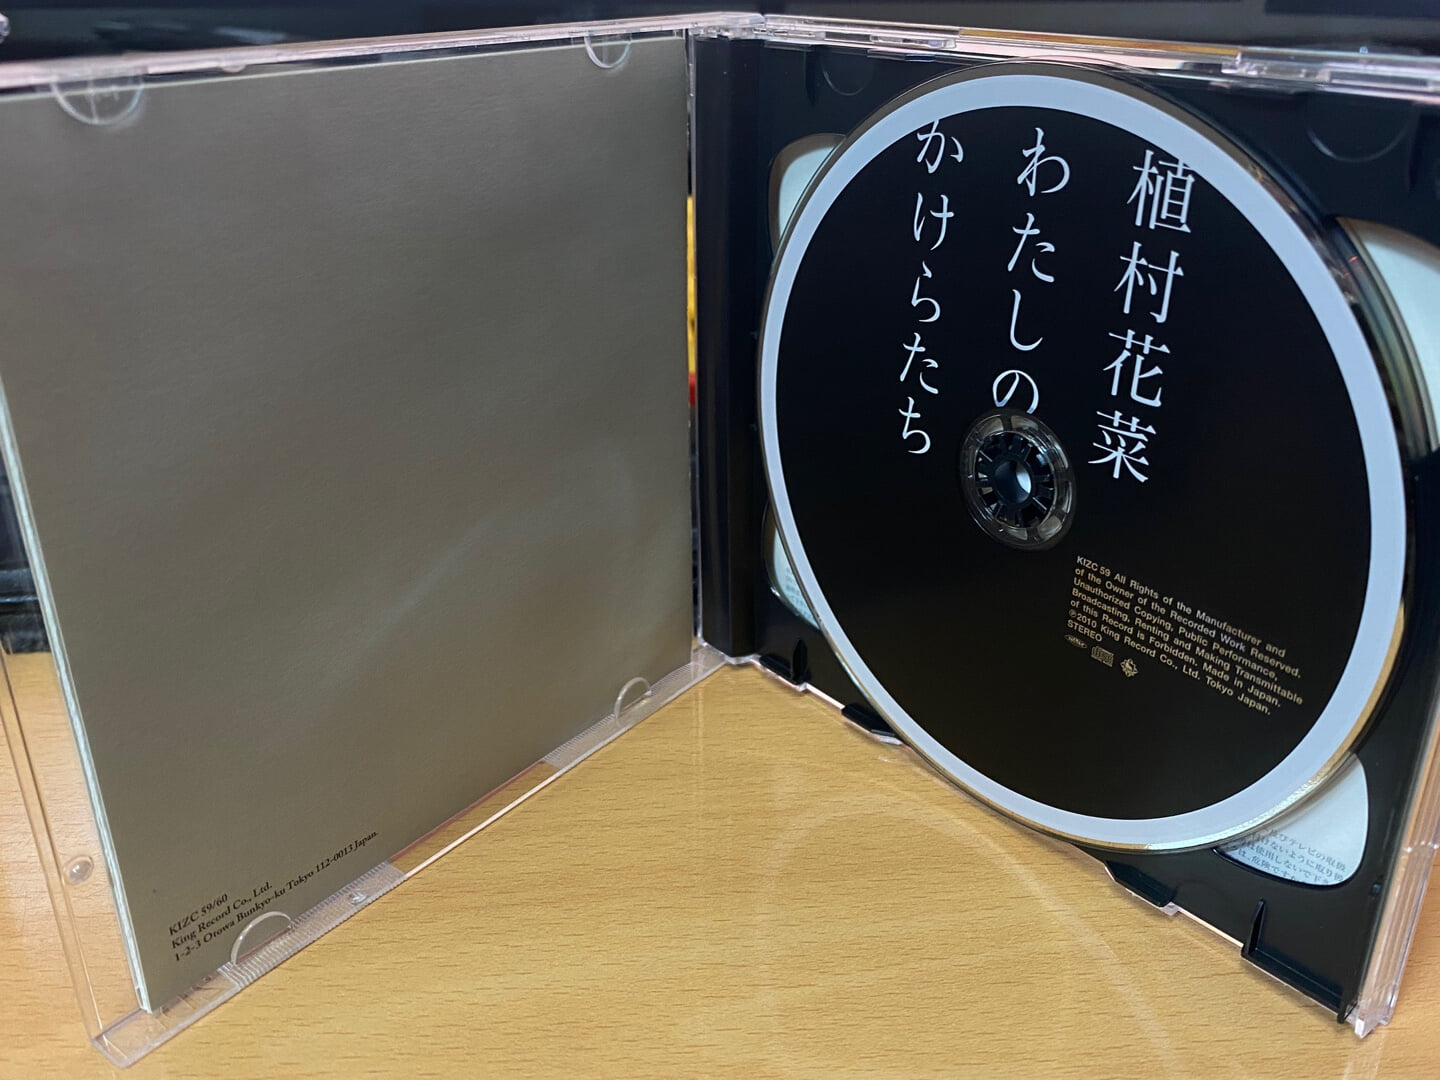 우에무라 카나 - Kana Uemura - わたしのかけらたち 2Cds [1CD+1DVD] [일본발매]